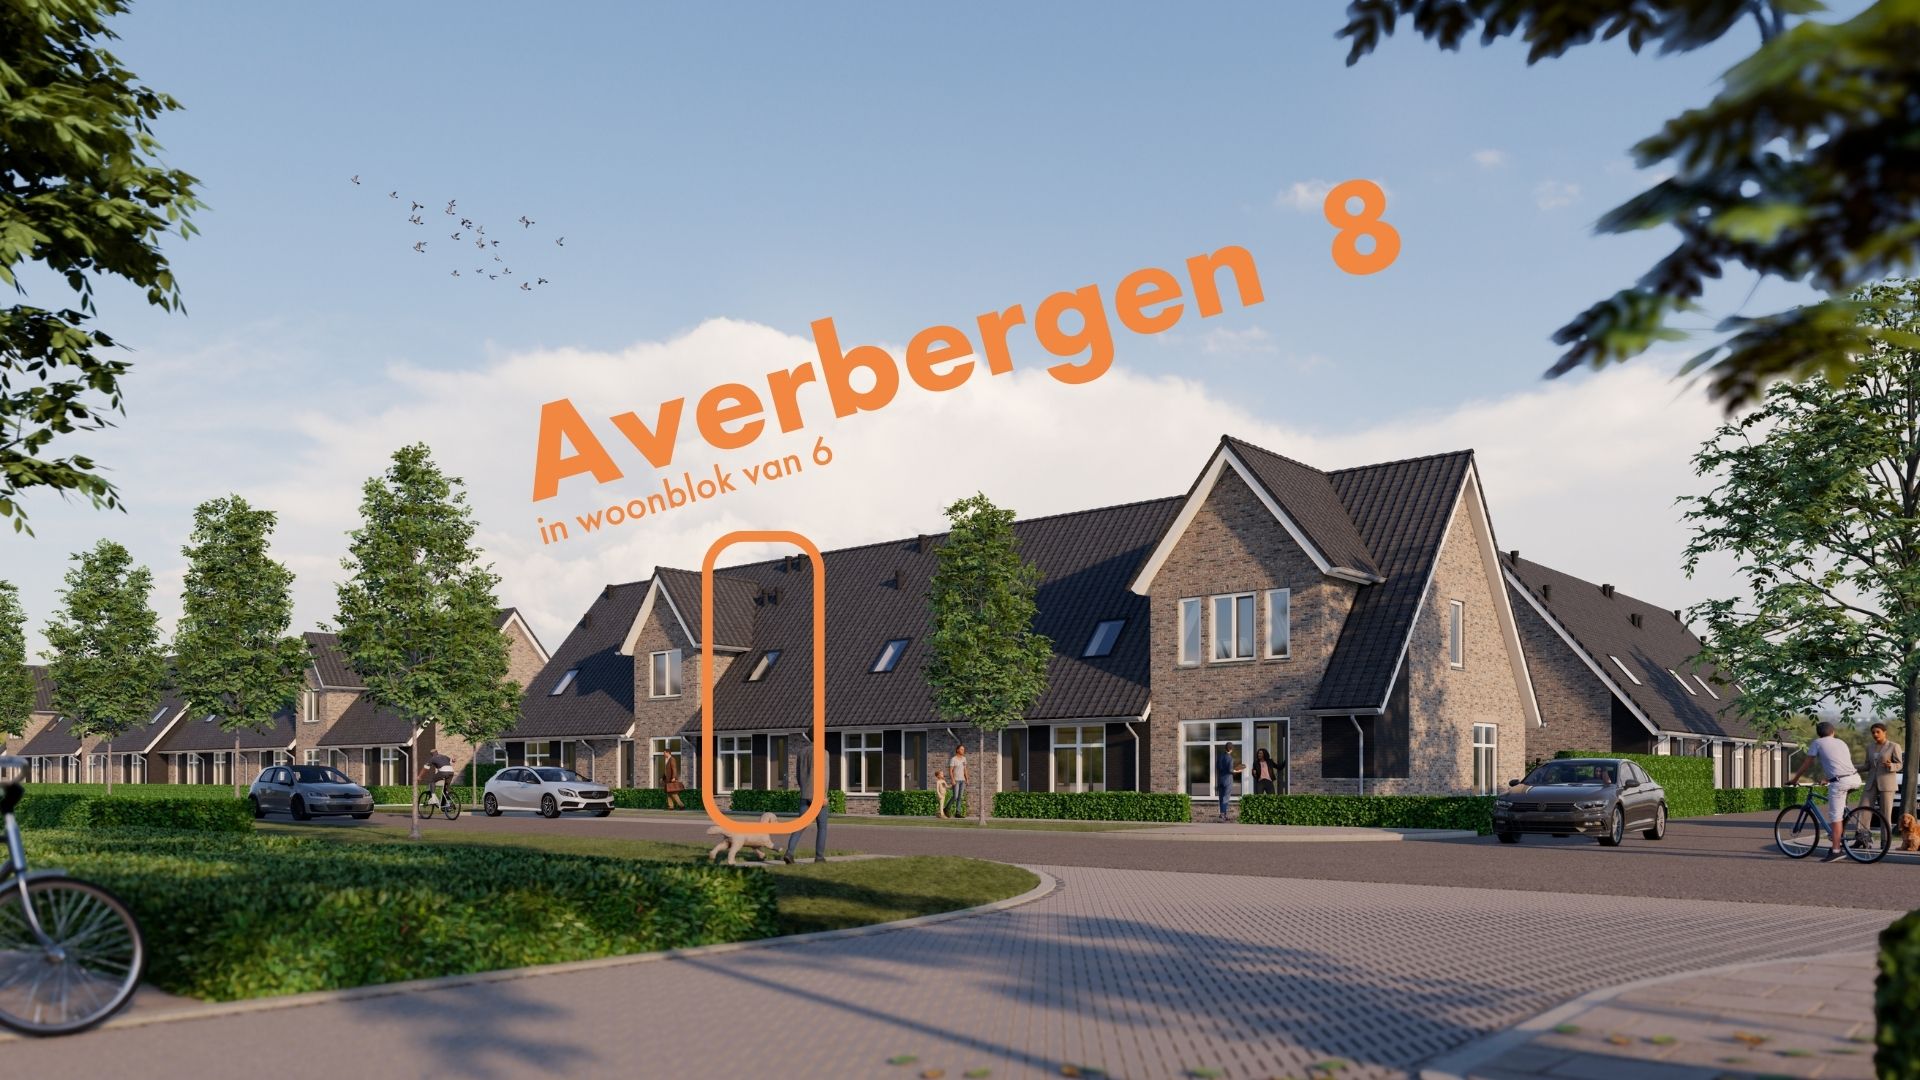 Averbergen 8